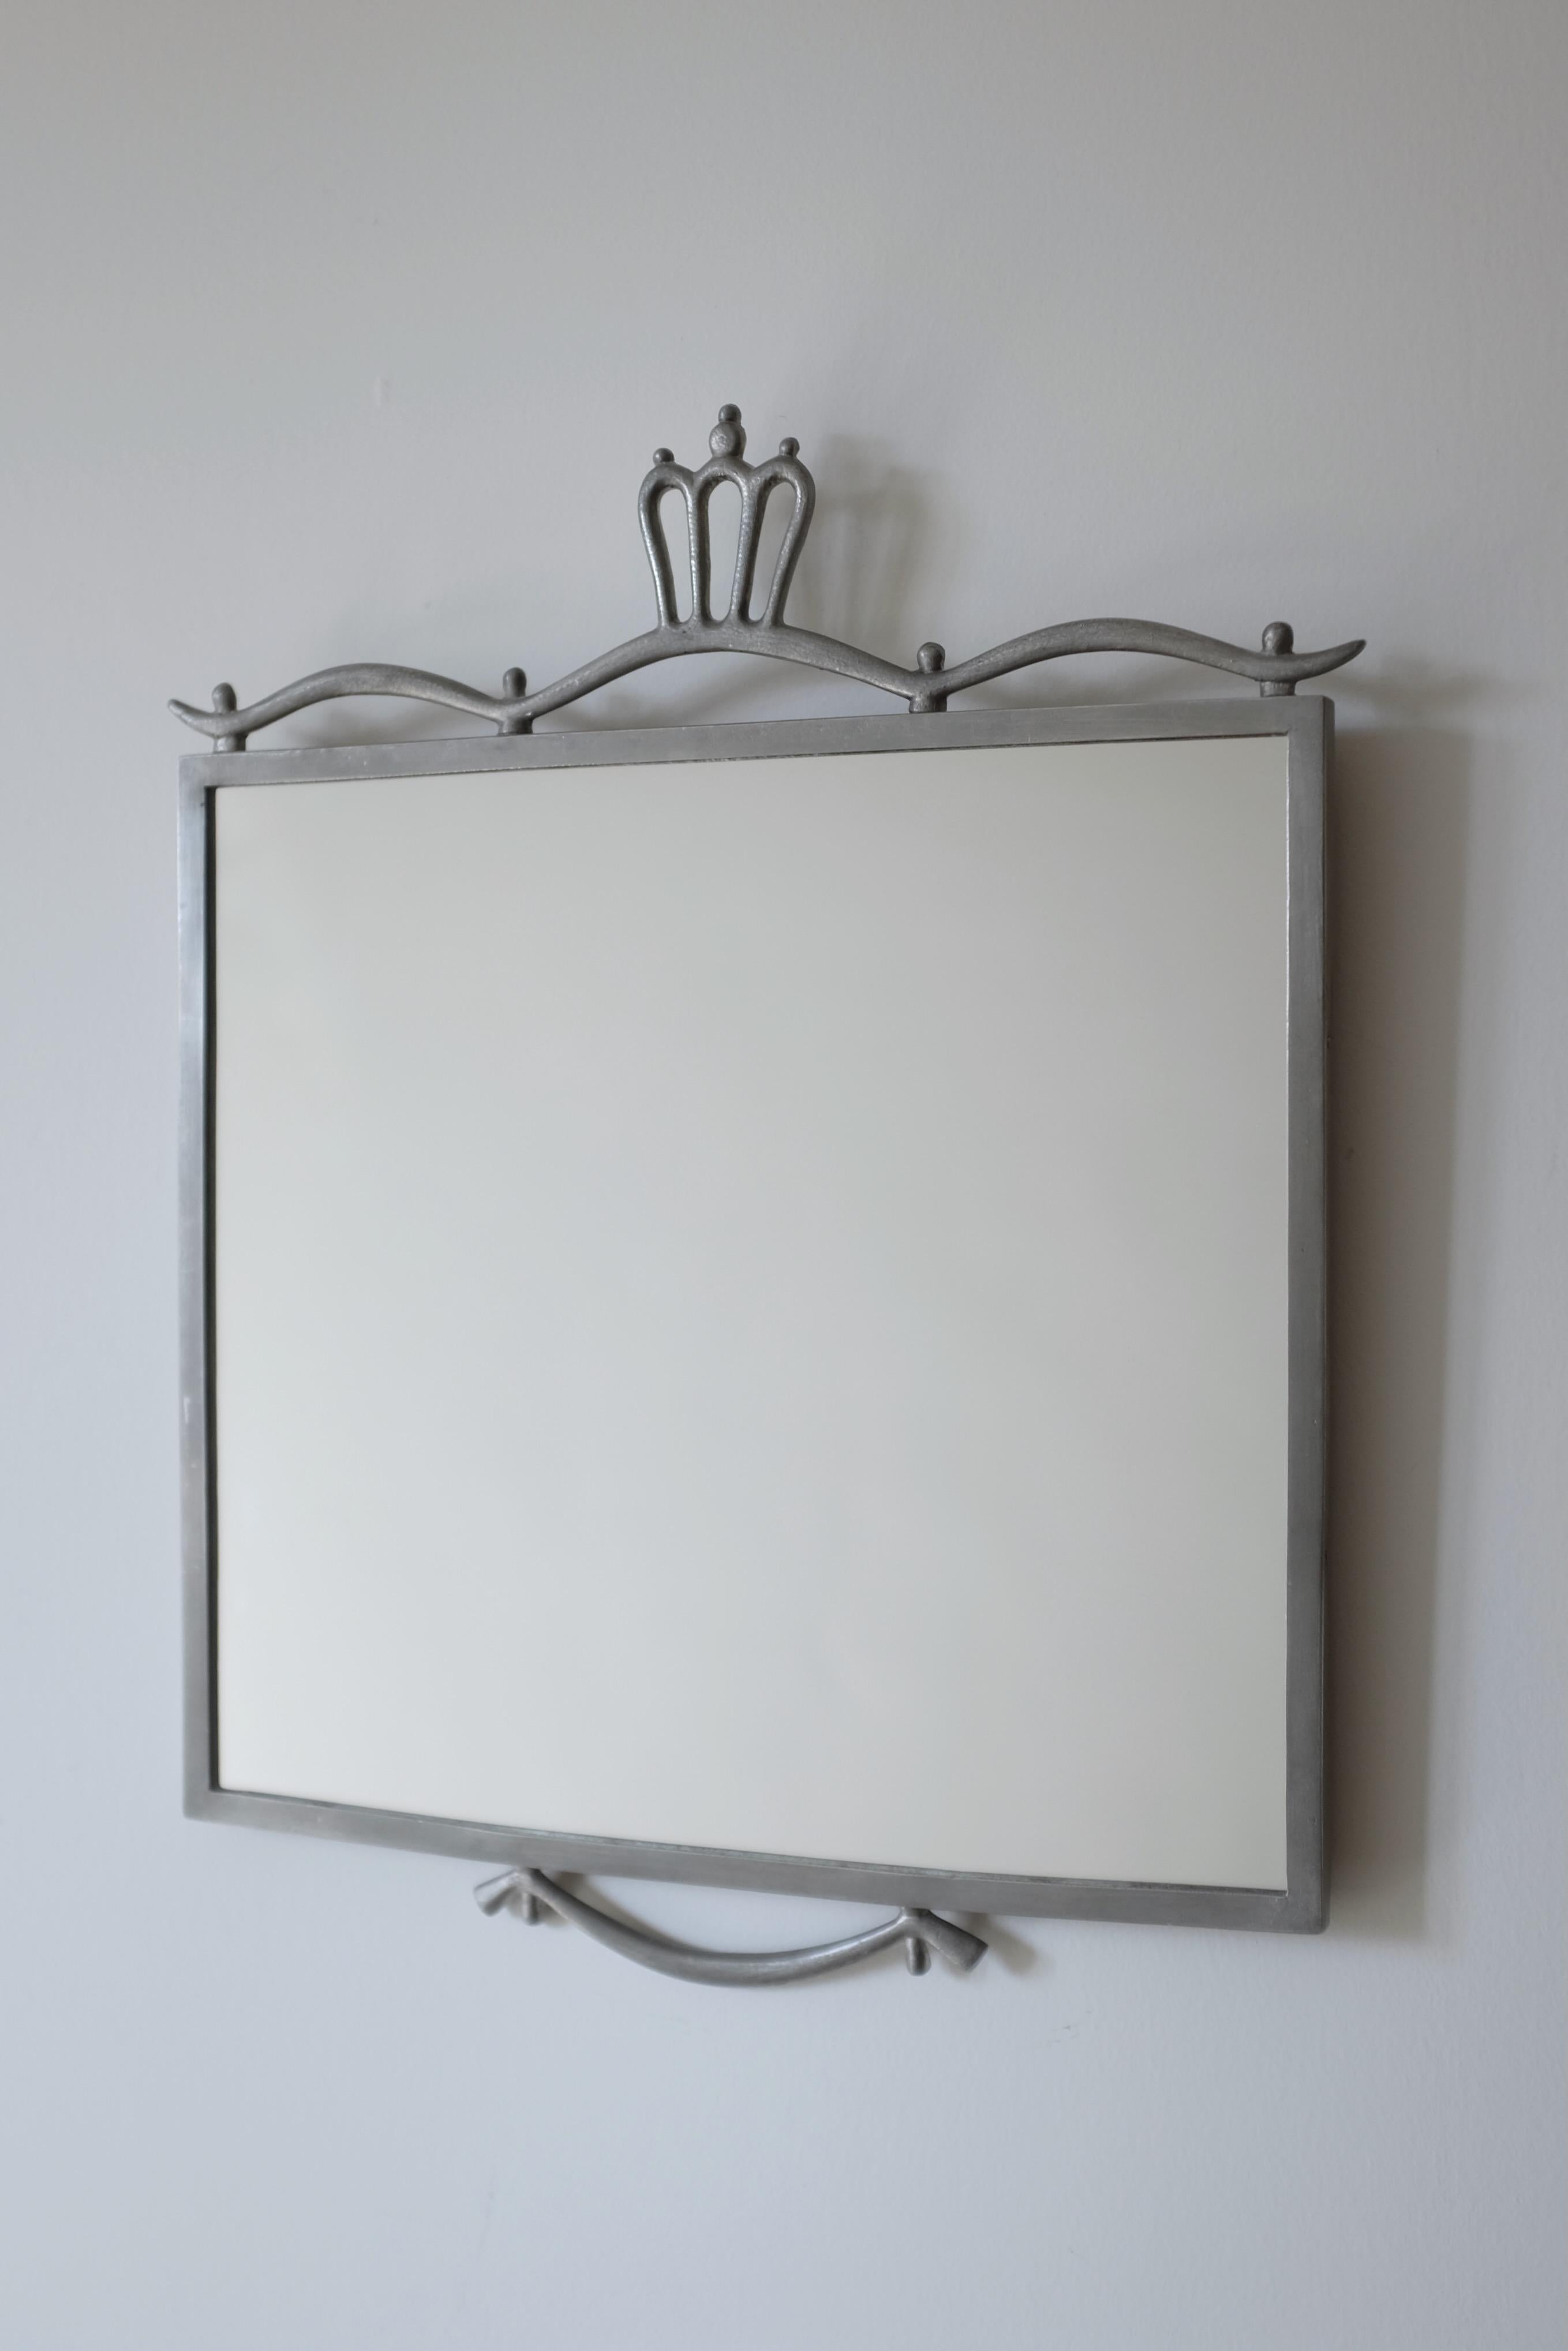 Magnifique miroir suédois Grace en étain par Edvin Ollers de 1924. Un design presque carré avec des ornements décoratifs en haut et en bas du miroir. Verre neuf et marqué du nom du designer et de l'année de fabrication. Edvin Ollers était un artiste